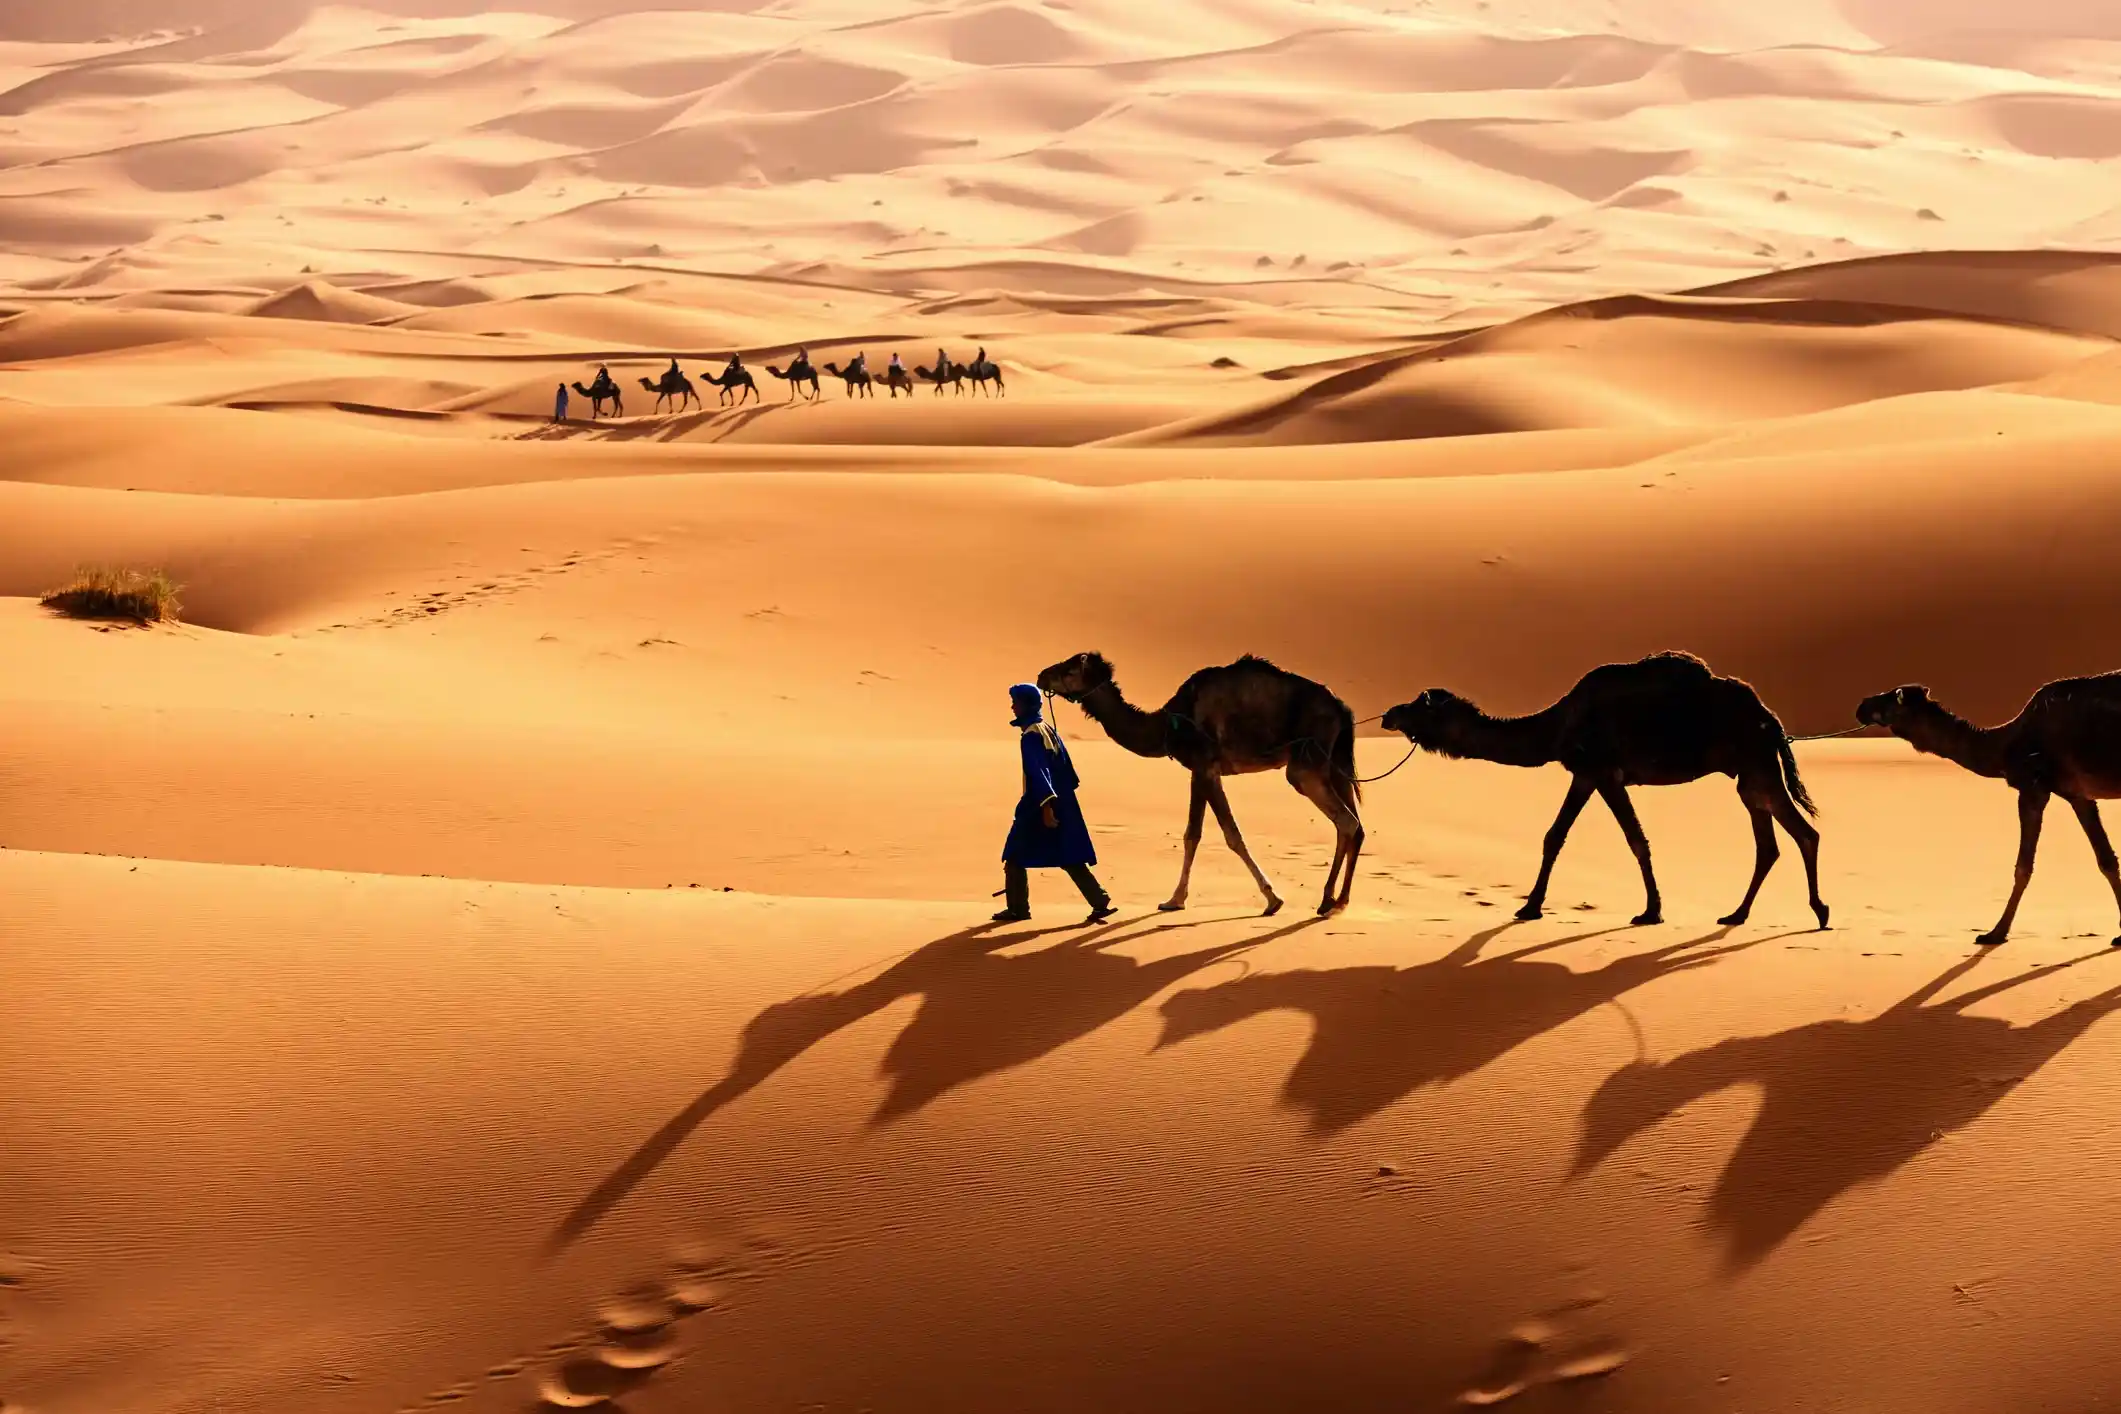 Investigating The Sahara Desert: